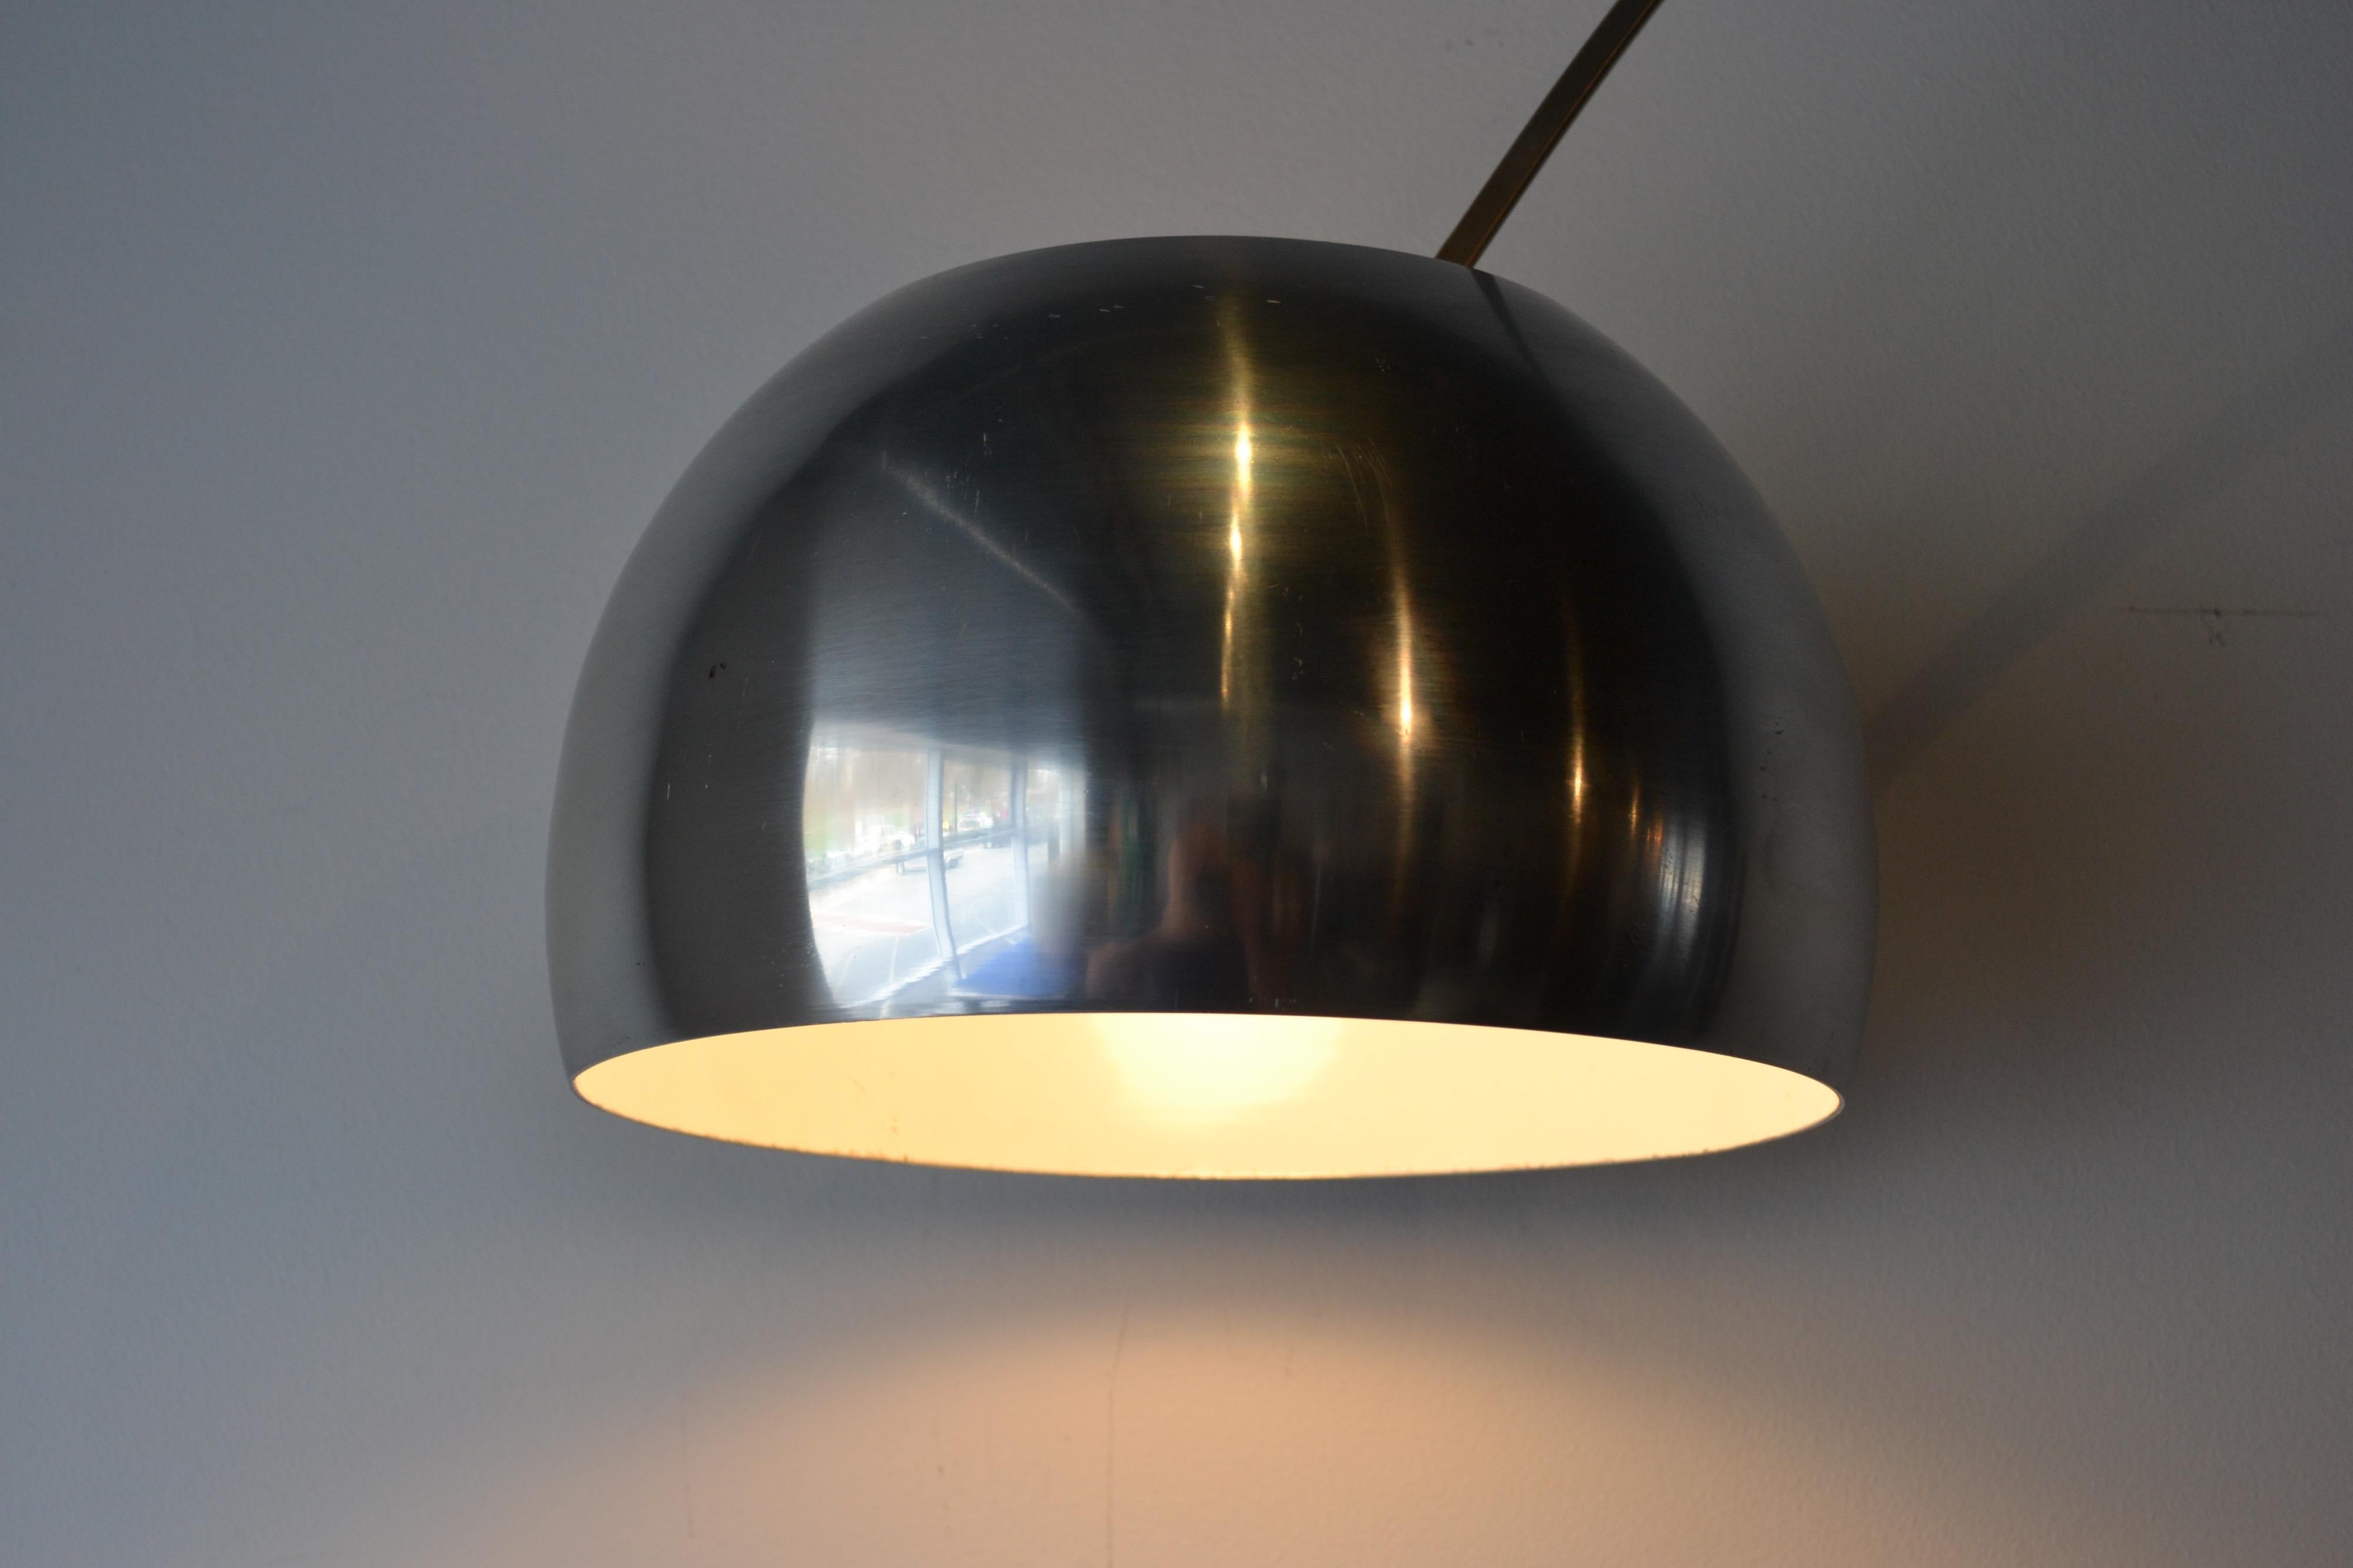 La lampe Arco est un plafonnier moderne conçu par les frères Pier Giacomo et Achille Castiglioni pour Flos, en Italie.
La lampe est caractérisée par un pendentif suspendu en aluminium filé, fixé à une plaque verticale de marbre de Carrare par un